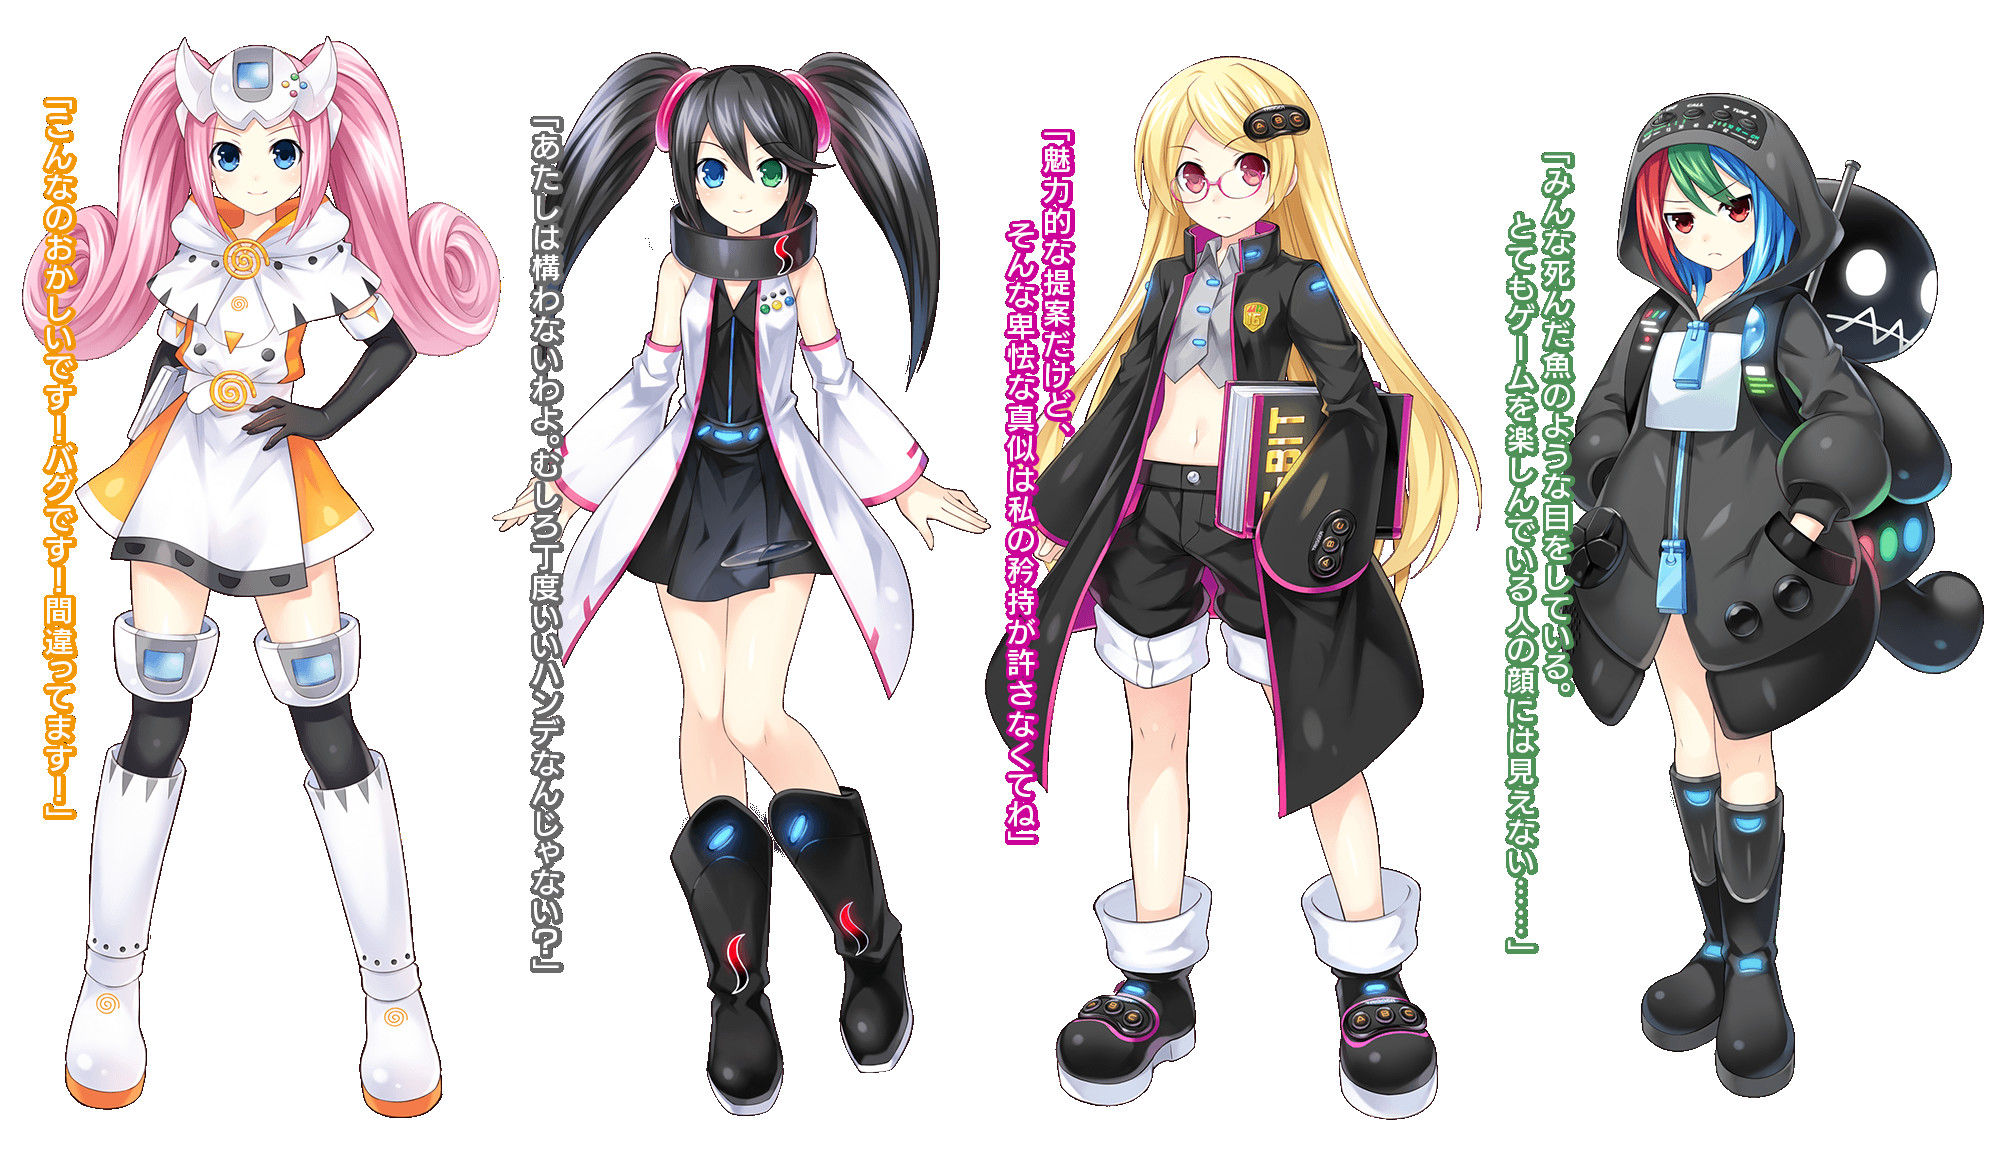 Image from the Japanese website for Neptunia vs Sega Hard Girls